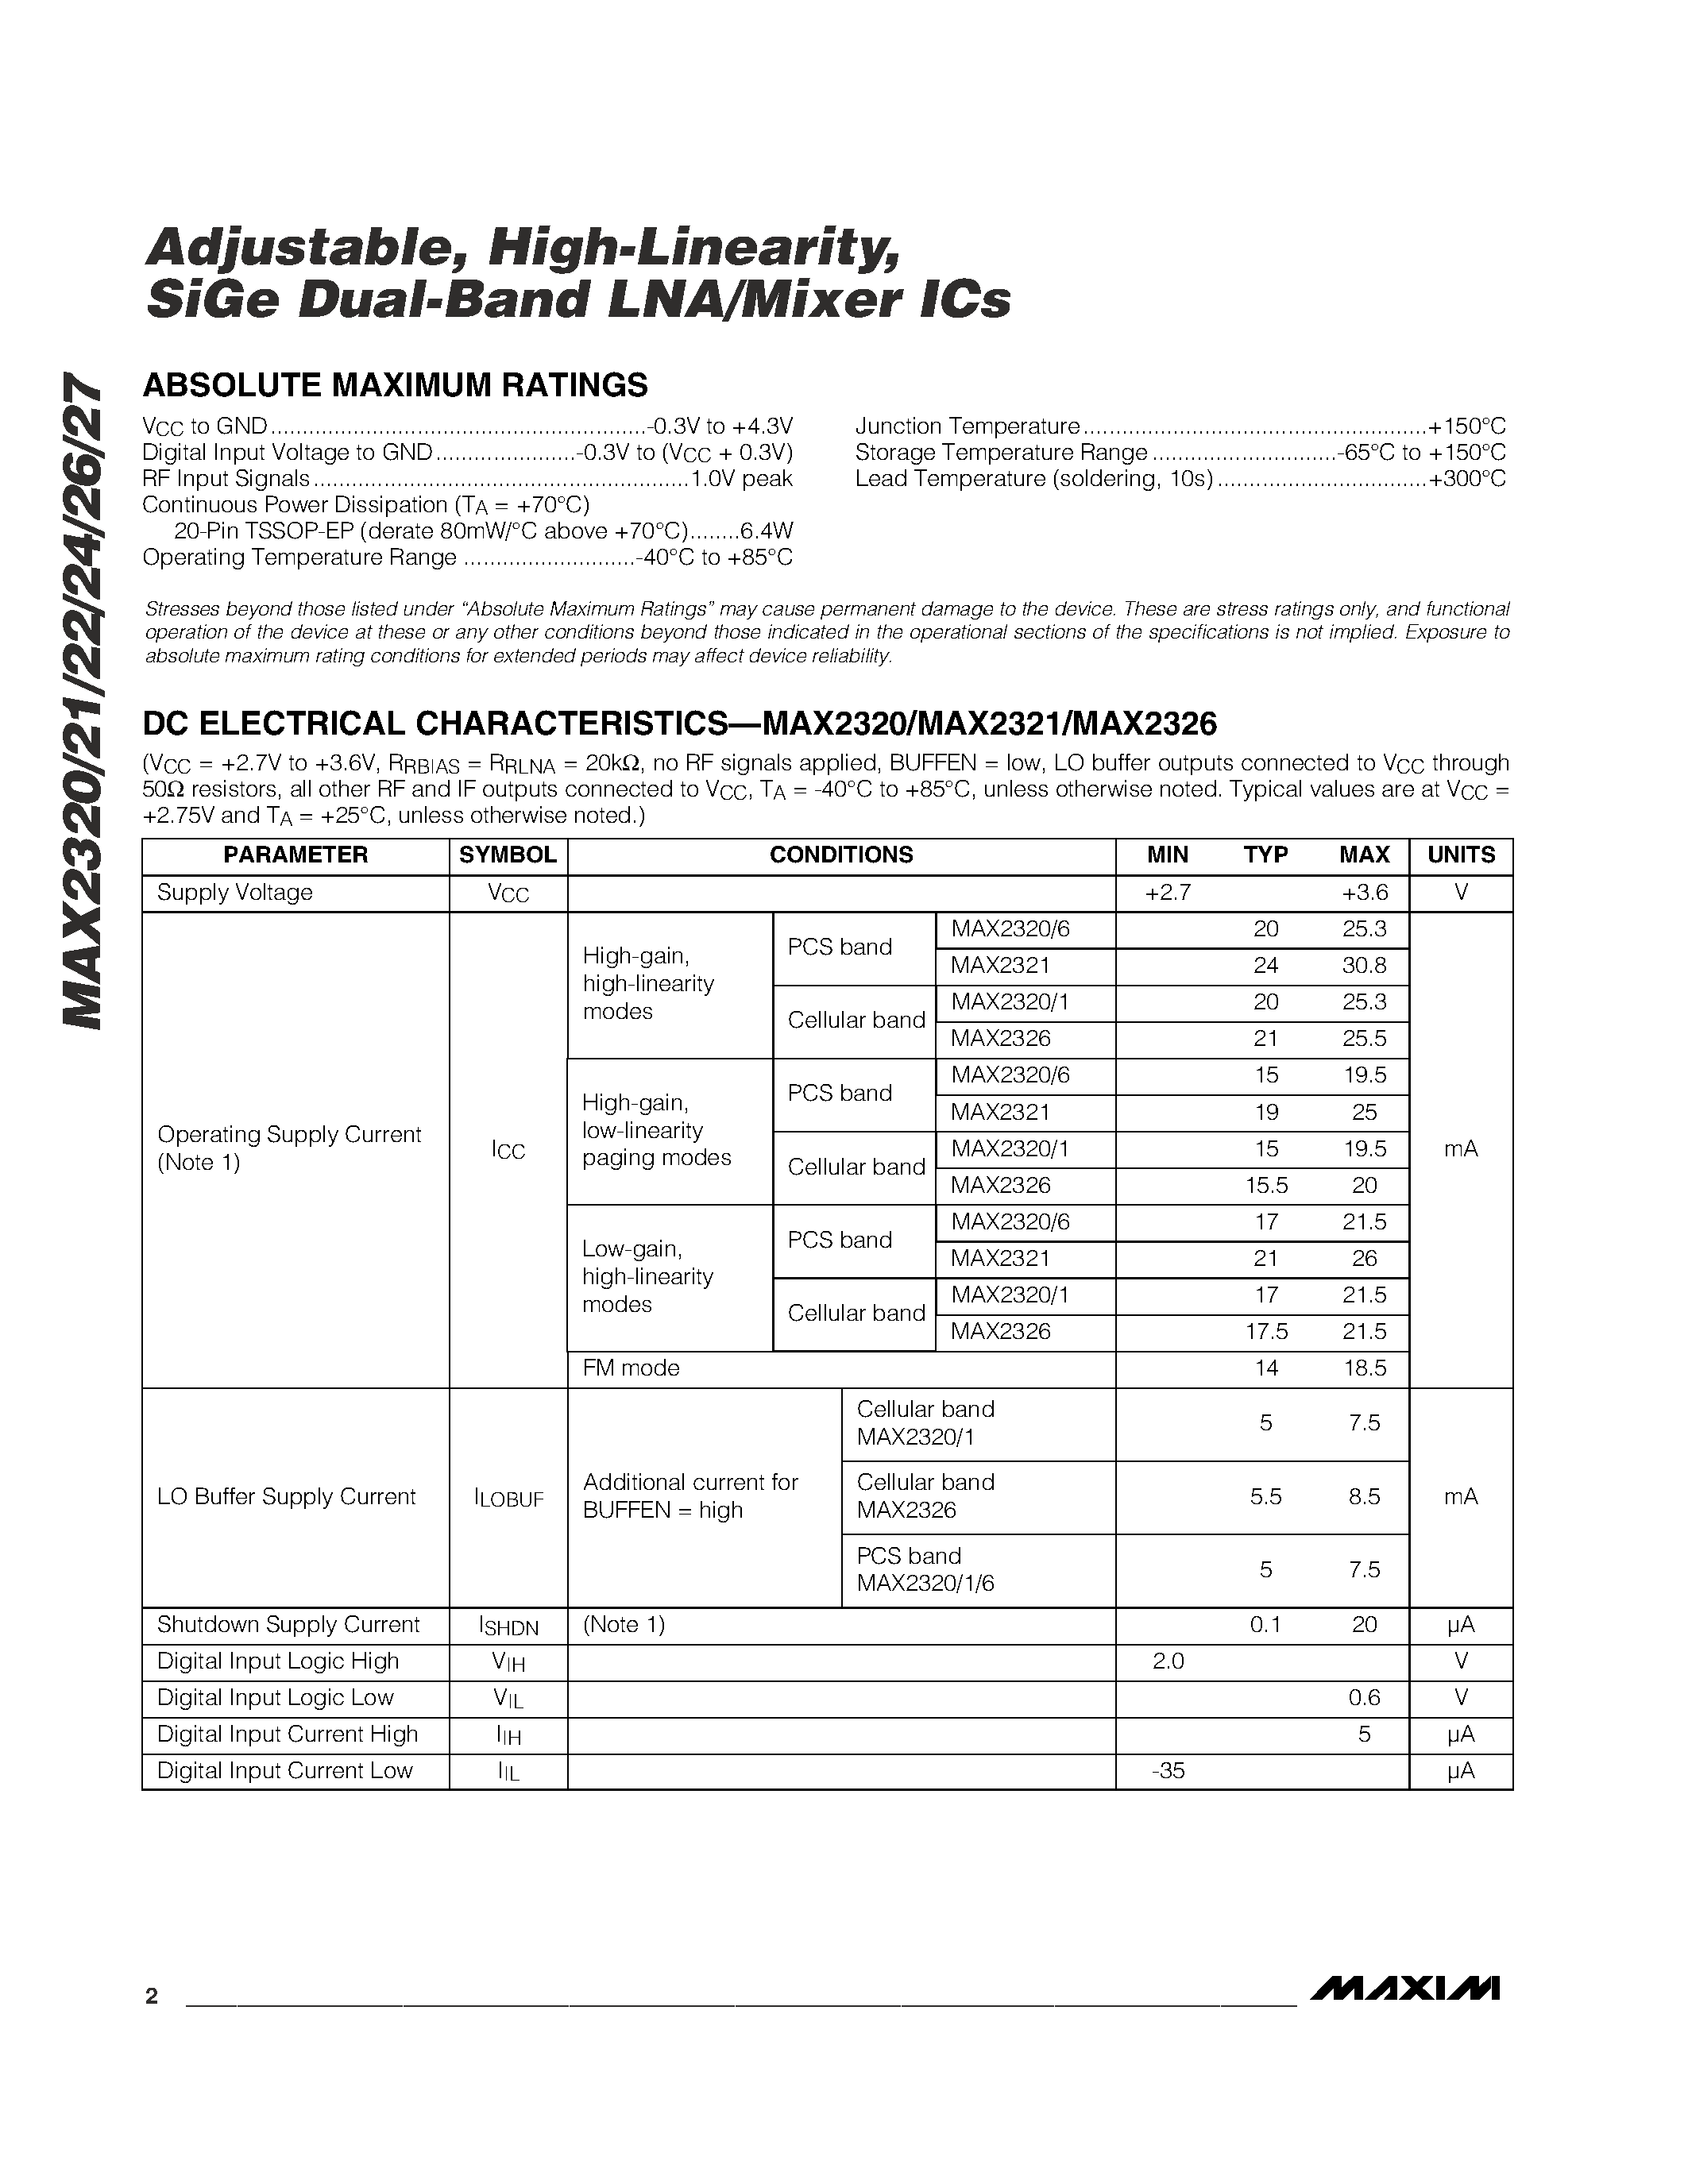 Даташит MAX2326 - Adjustable / High-Linearity / SiGe Dual-Band LNA/Mixer ICs страница 2